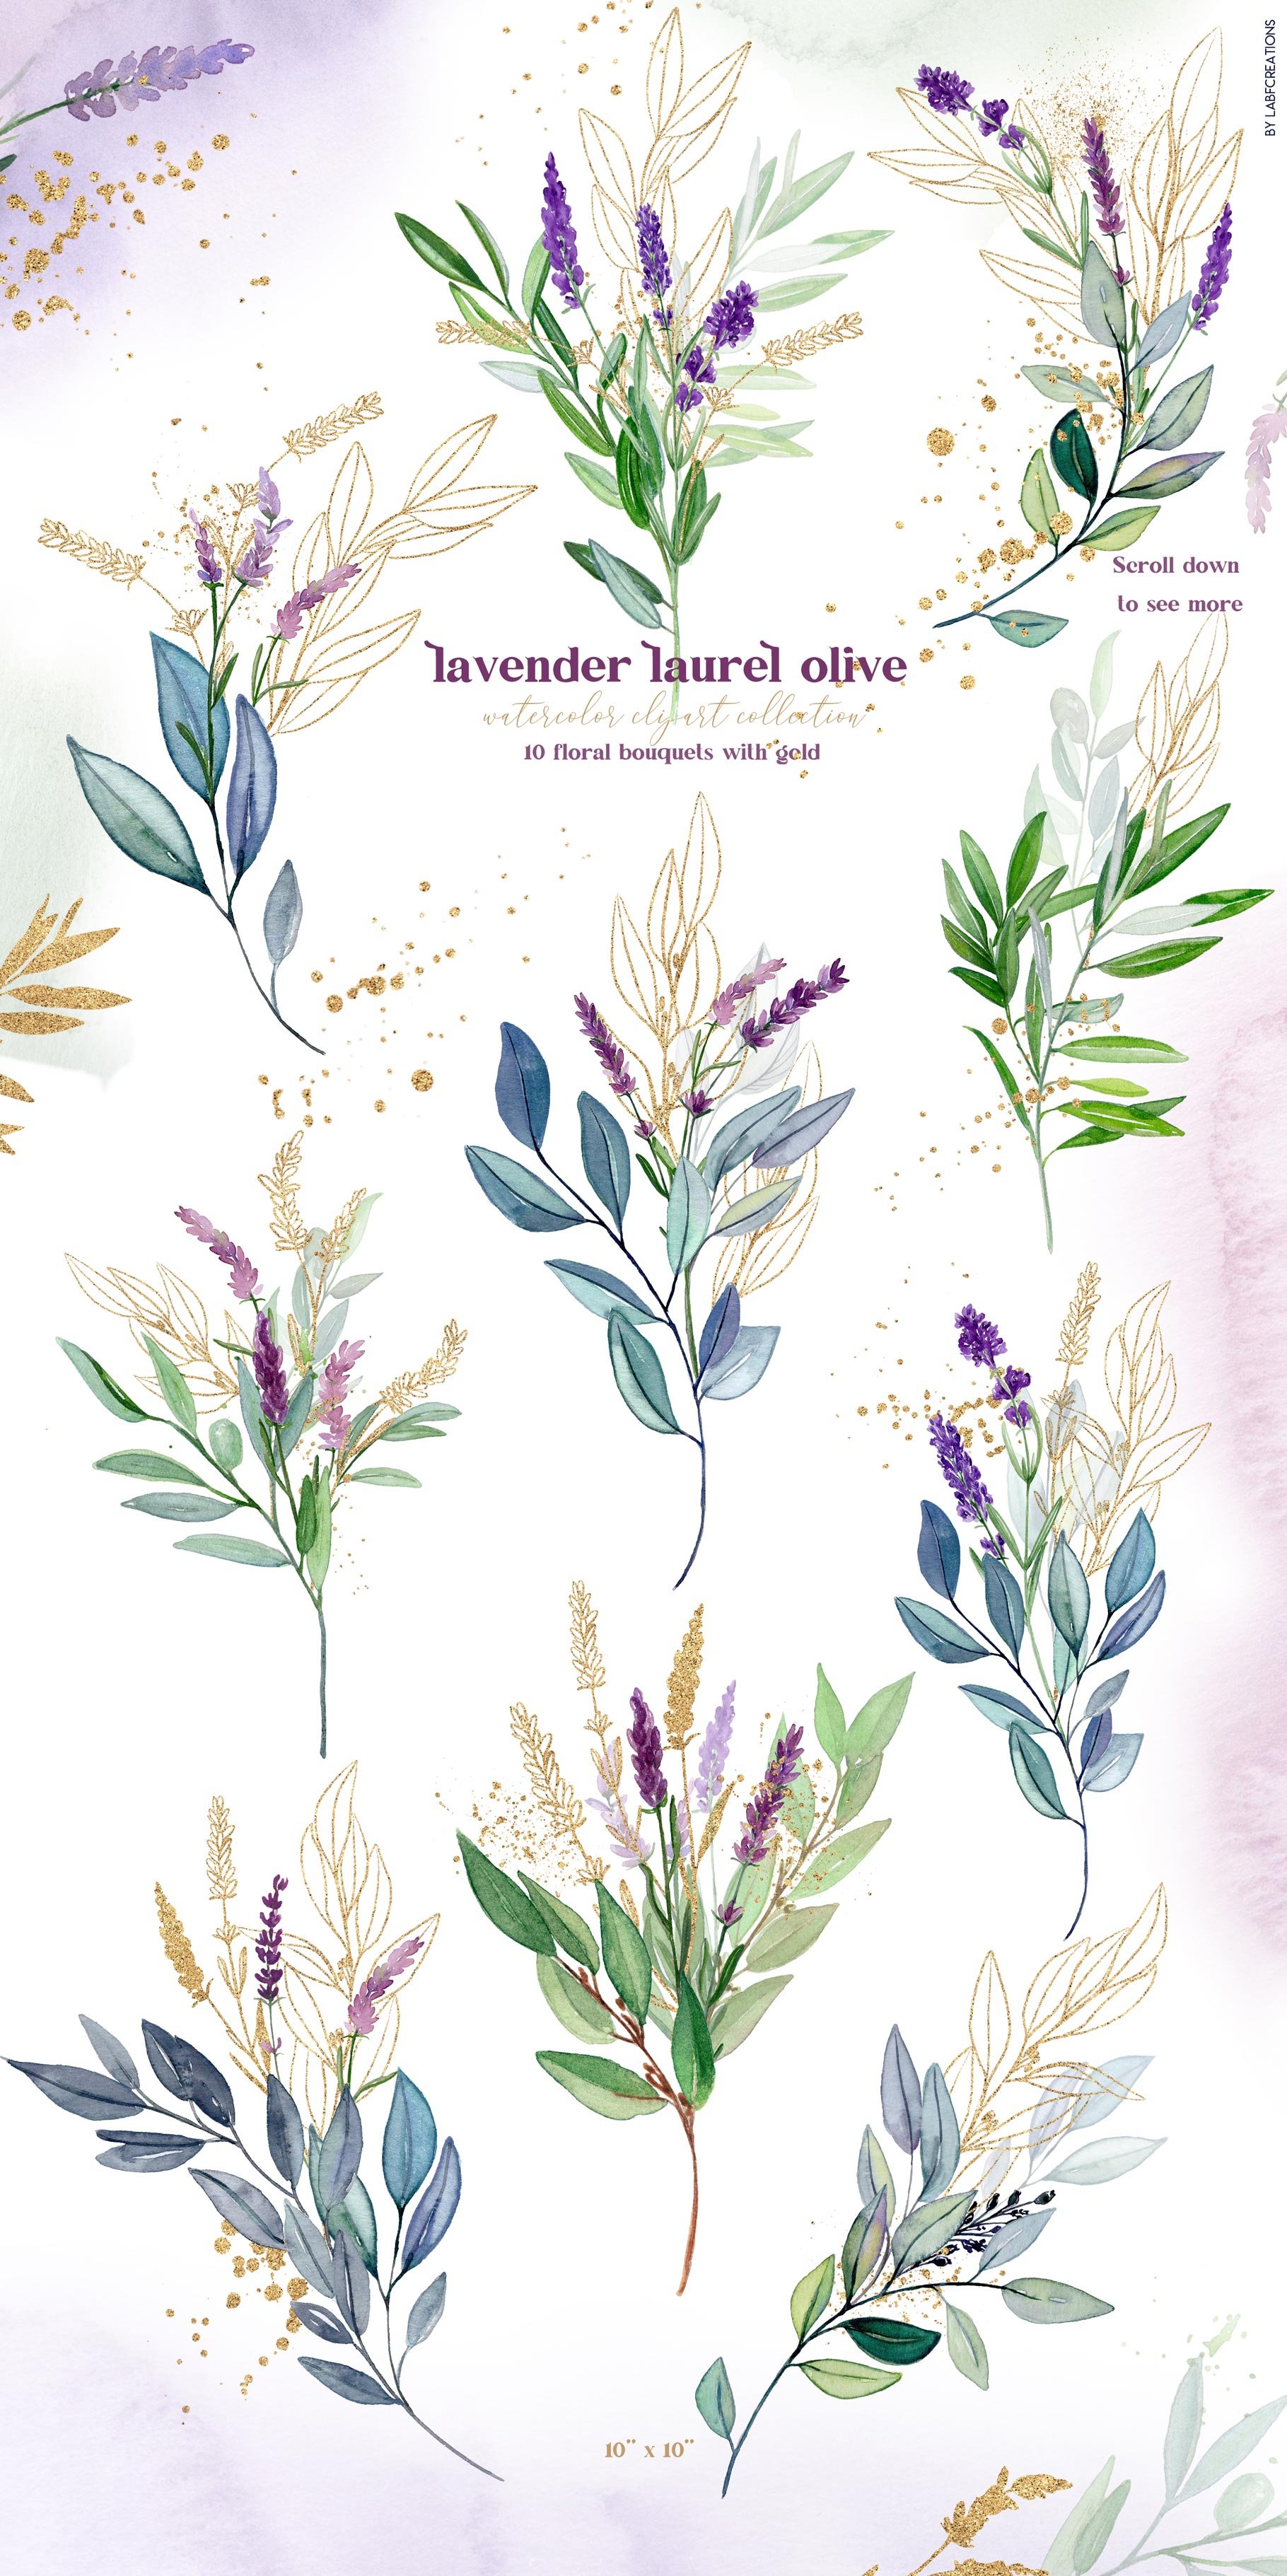 a lavender laurel olive presentation golden bouquets 683